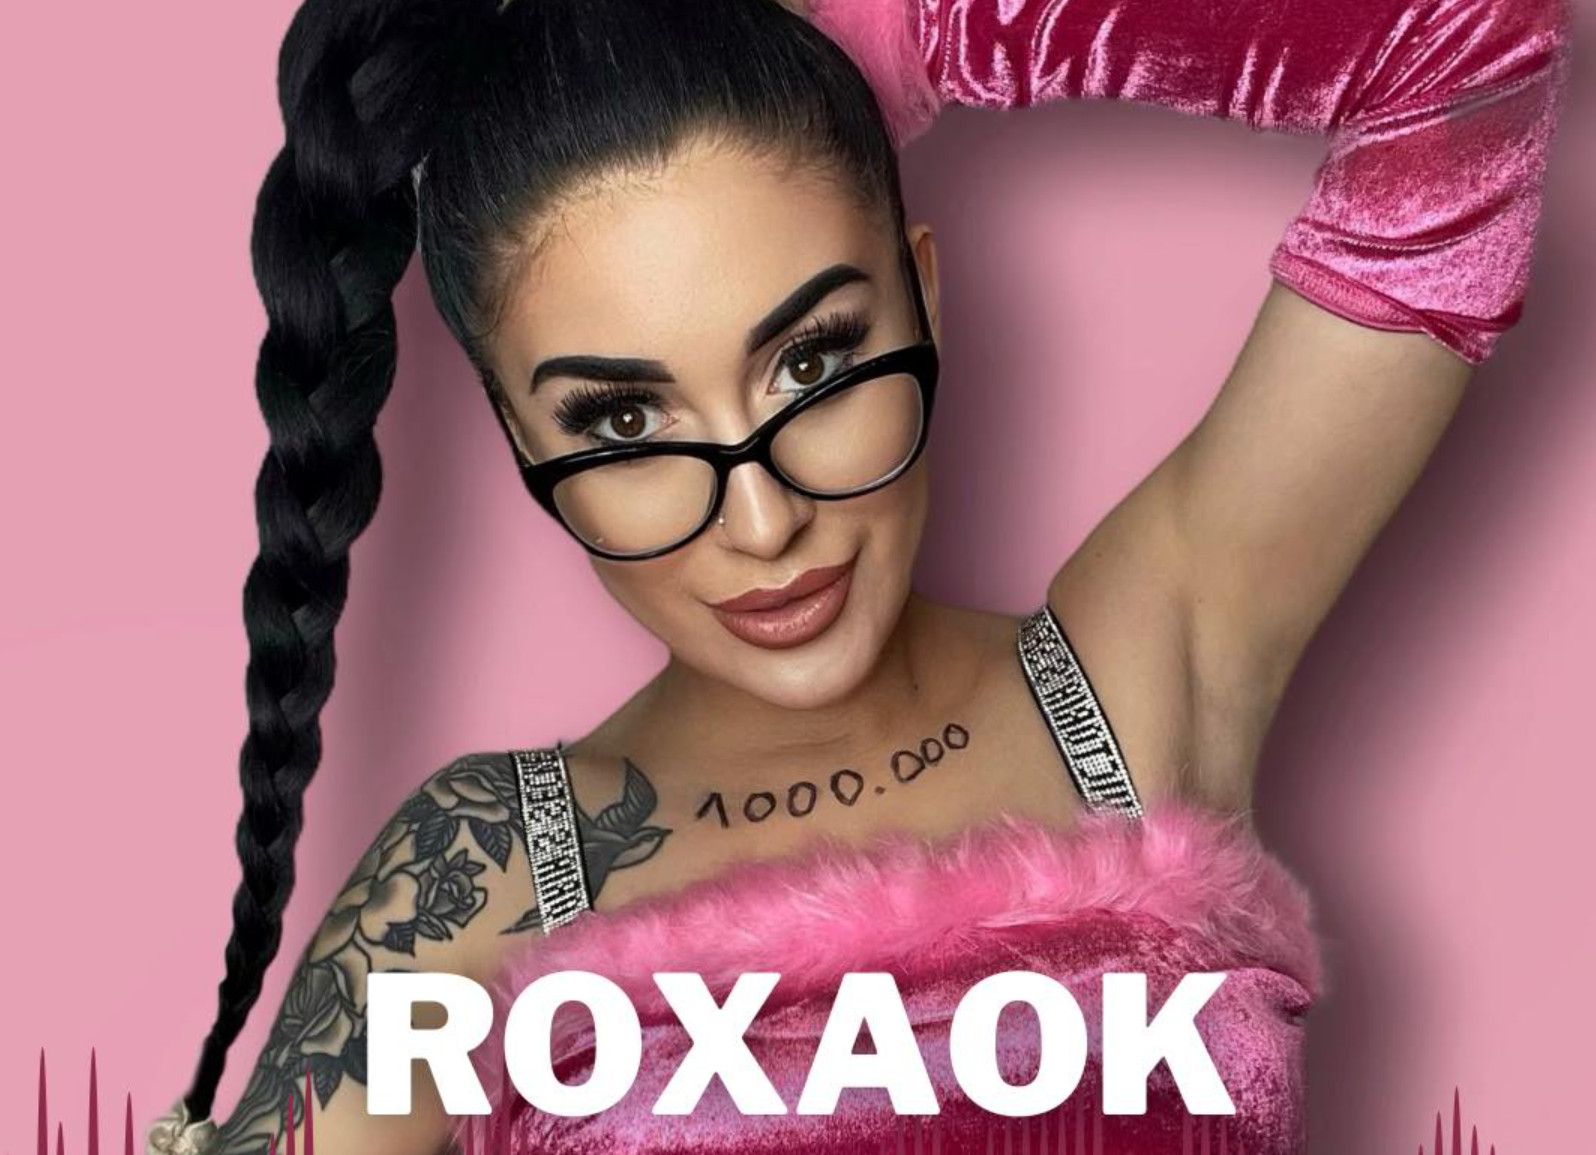 Roxaok poszukuje DJ-a! Młoda wokalistka rozpoczyna wielką karierę w disco polo!